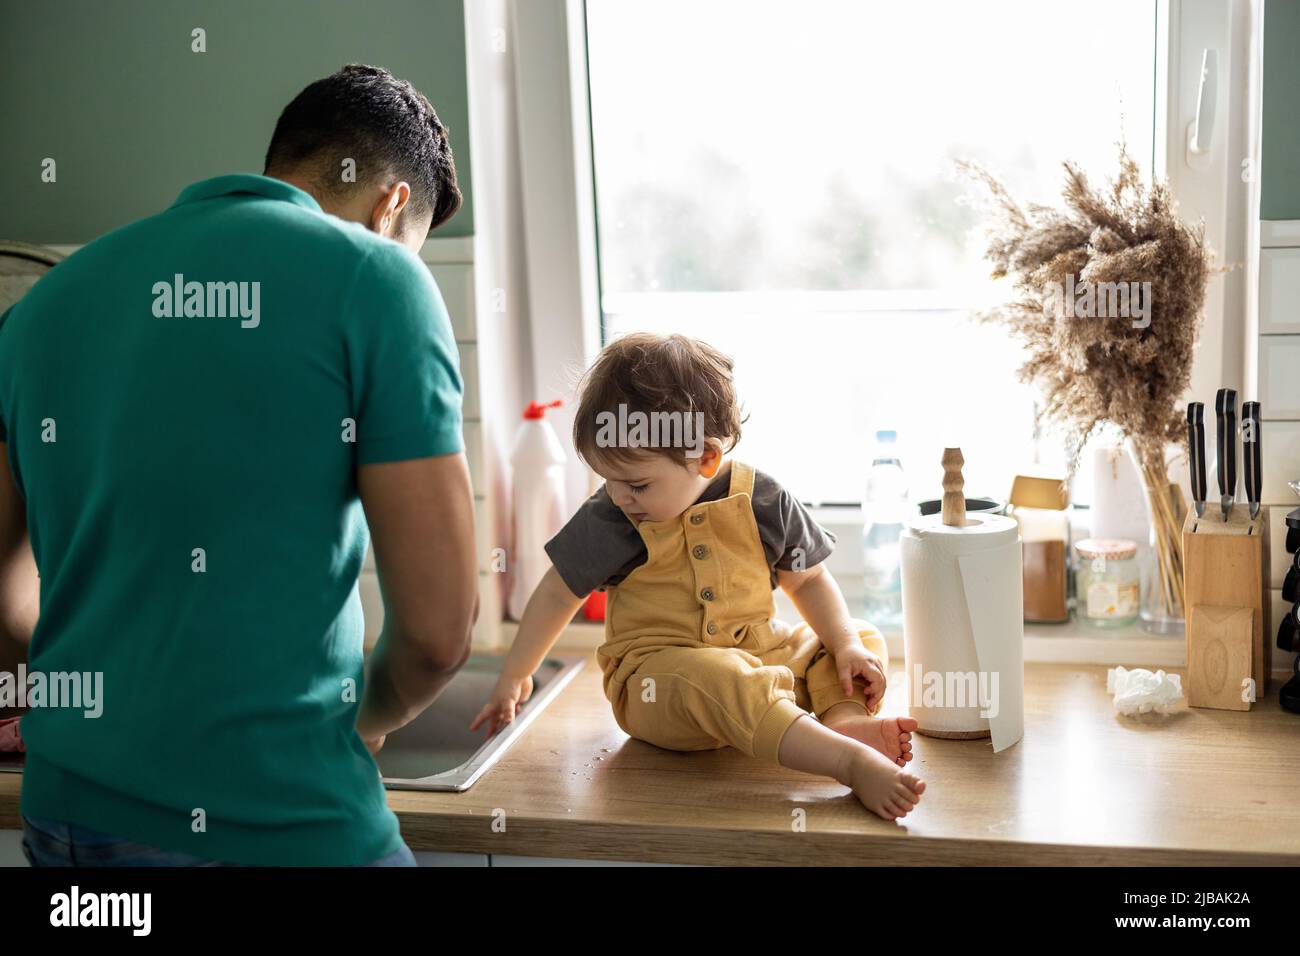 Vater mit seinem kleinen Kind in der heimischen Küche Stockfoto